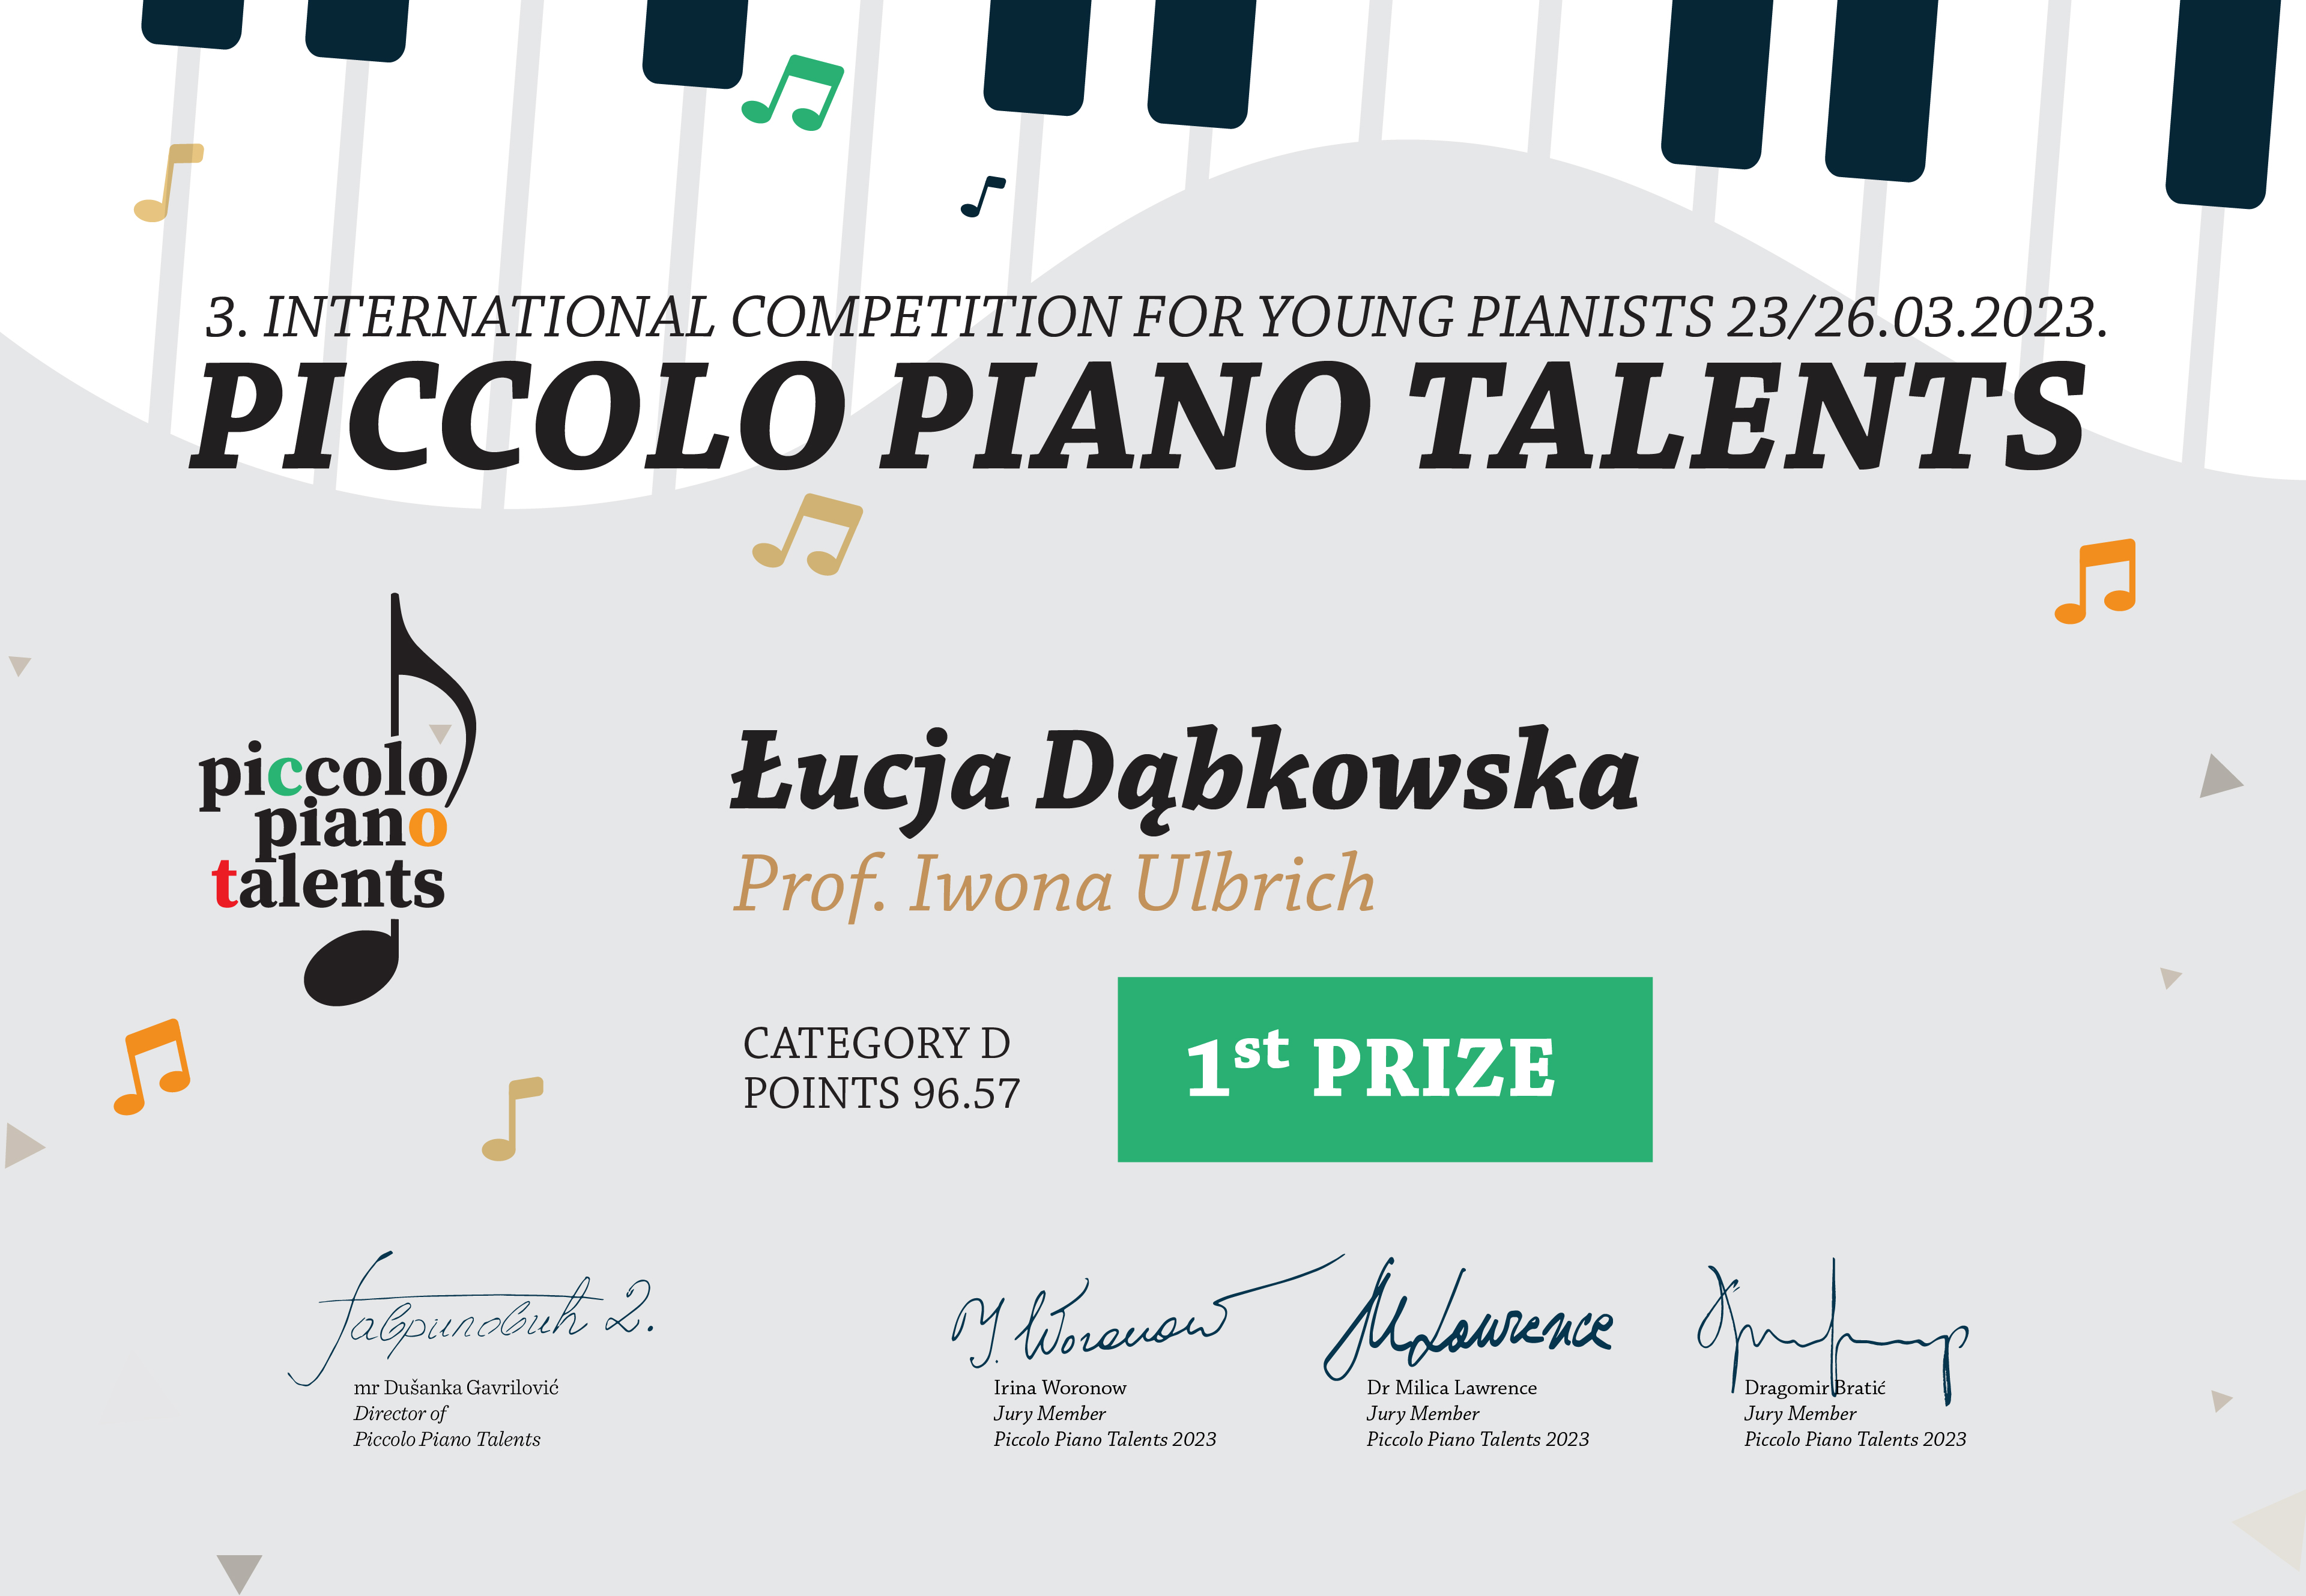 3 International Competition for Toung Pianists 23/26. 03.2023, nauczyciel prof. Iwona Ulbrich. Po lewej stronie logo "Piccolo Piano Talenst", na dole podpisy jury.